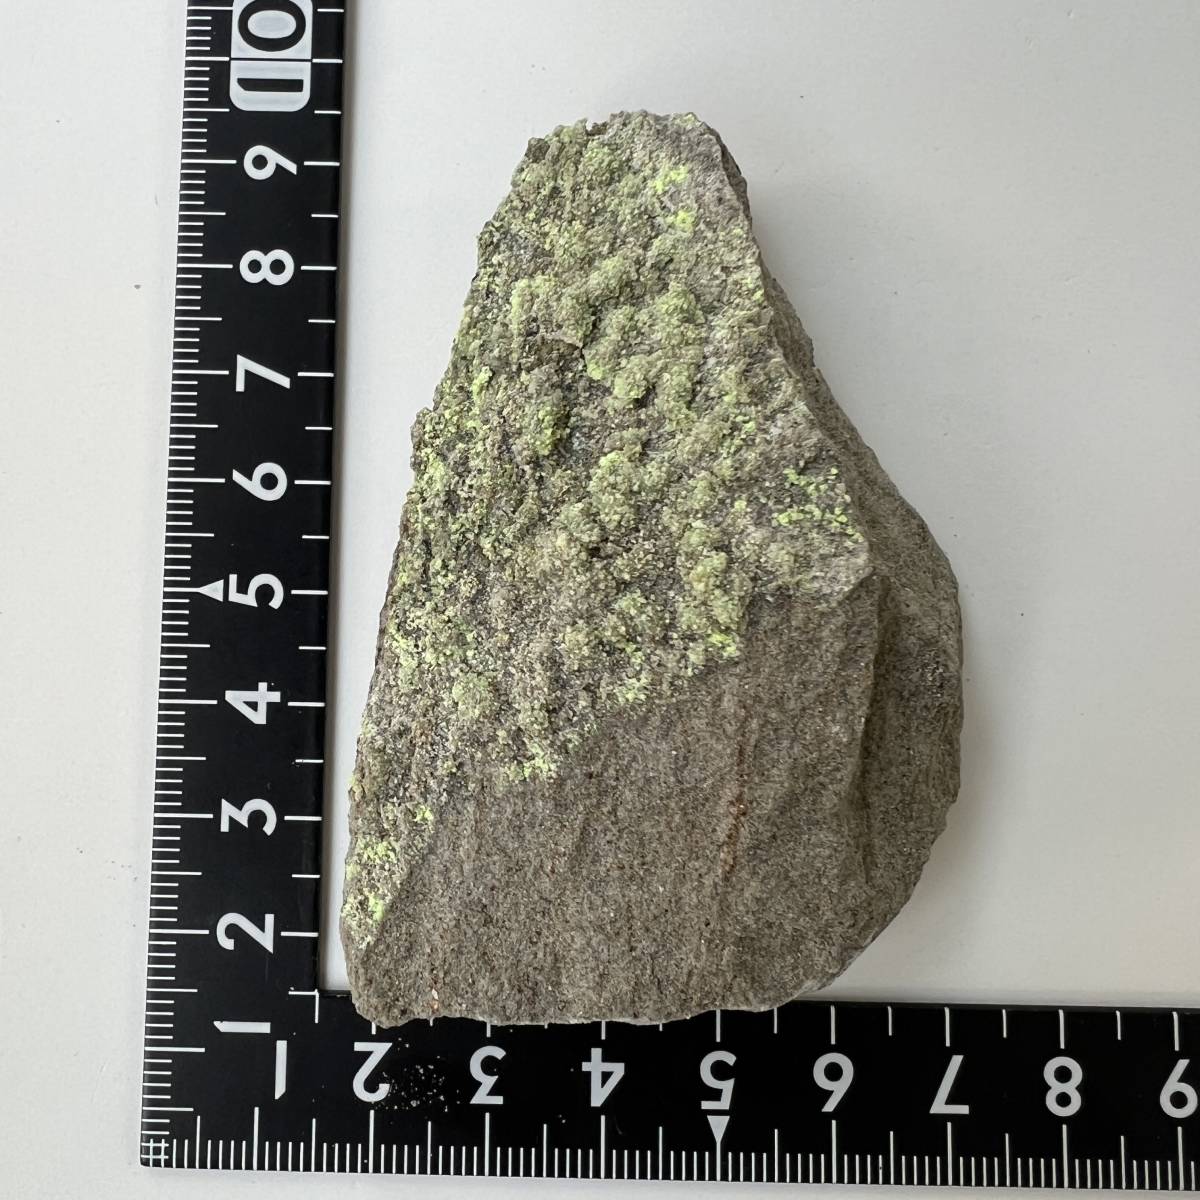 【E21057】アンダーソン石 蛍光鉱物 二酸化ウラニウム 鉱物 原石 天然石_画像2